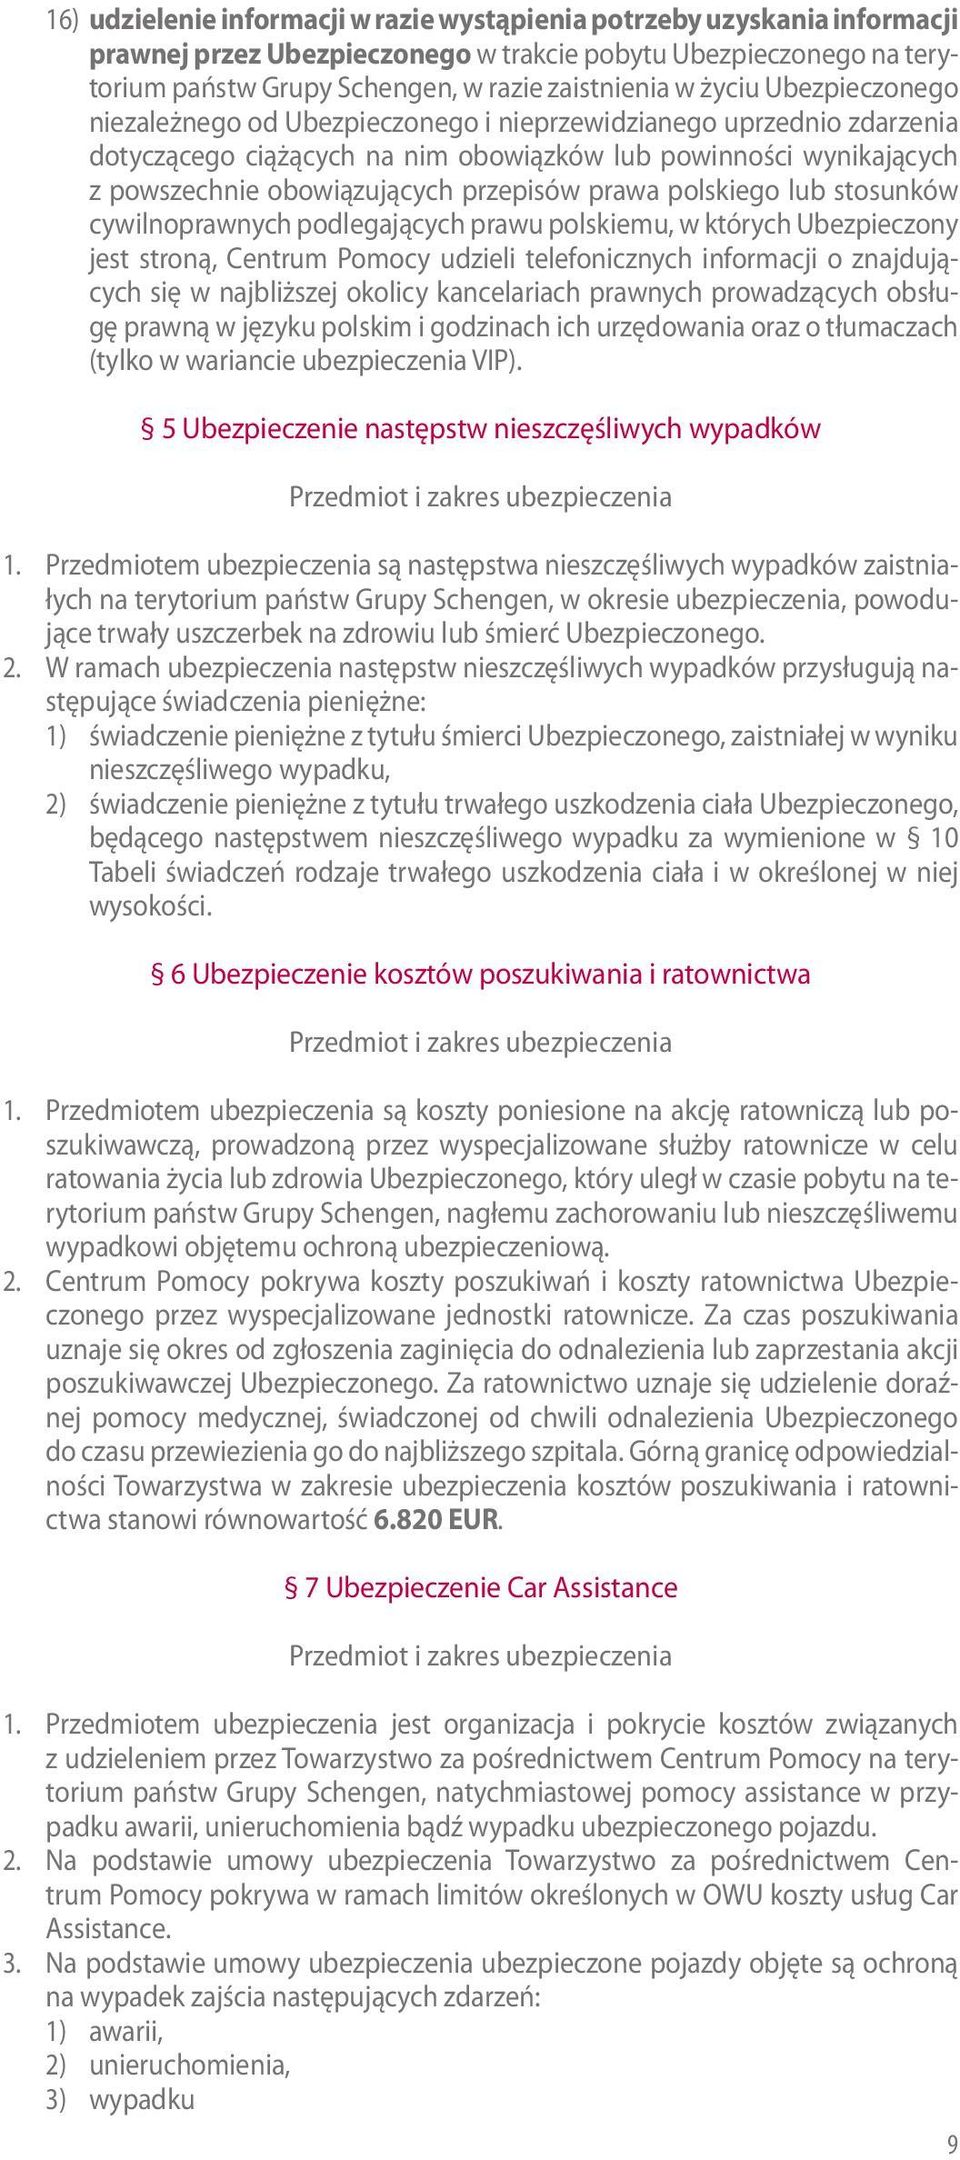 prawa polskiego lub stosunków cywilnoprawnych podlegających prawu polskiemu, w których Ubezpieczony jest stroną, Centrum Pomocy udzieli telefonicznych informacji o znajdujących się w najbliższej